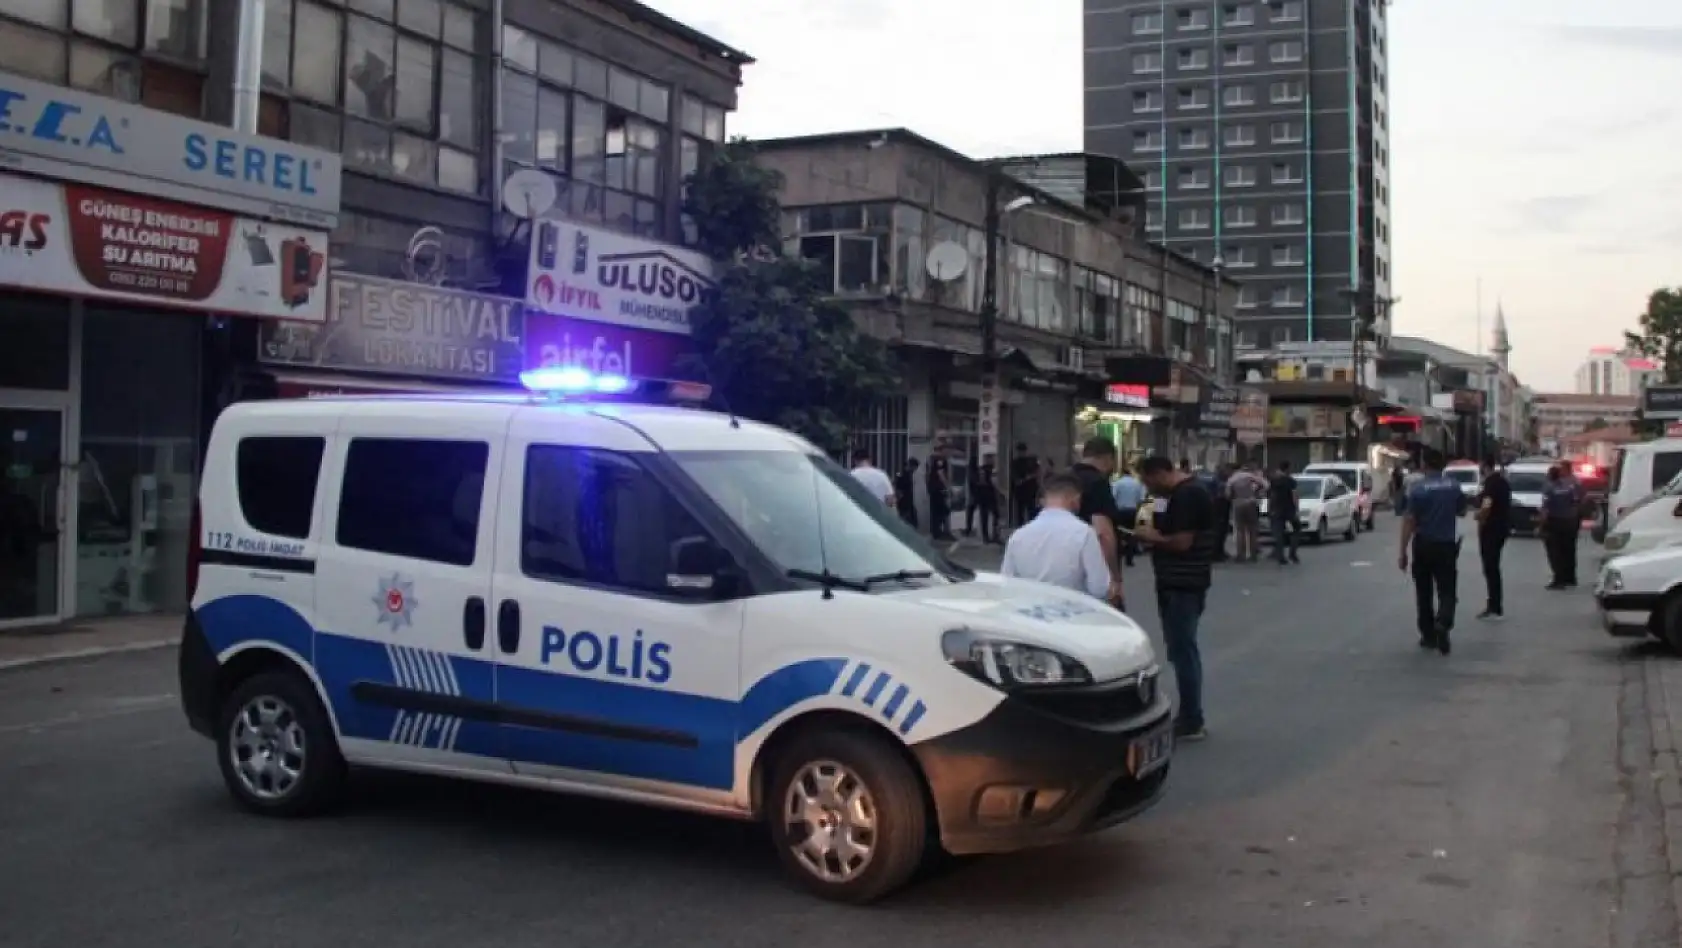 Kayseri'de polis memurunun şehit olduğu olayla ilgili 8 sanık...